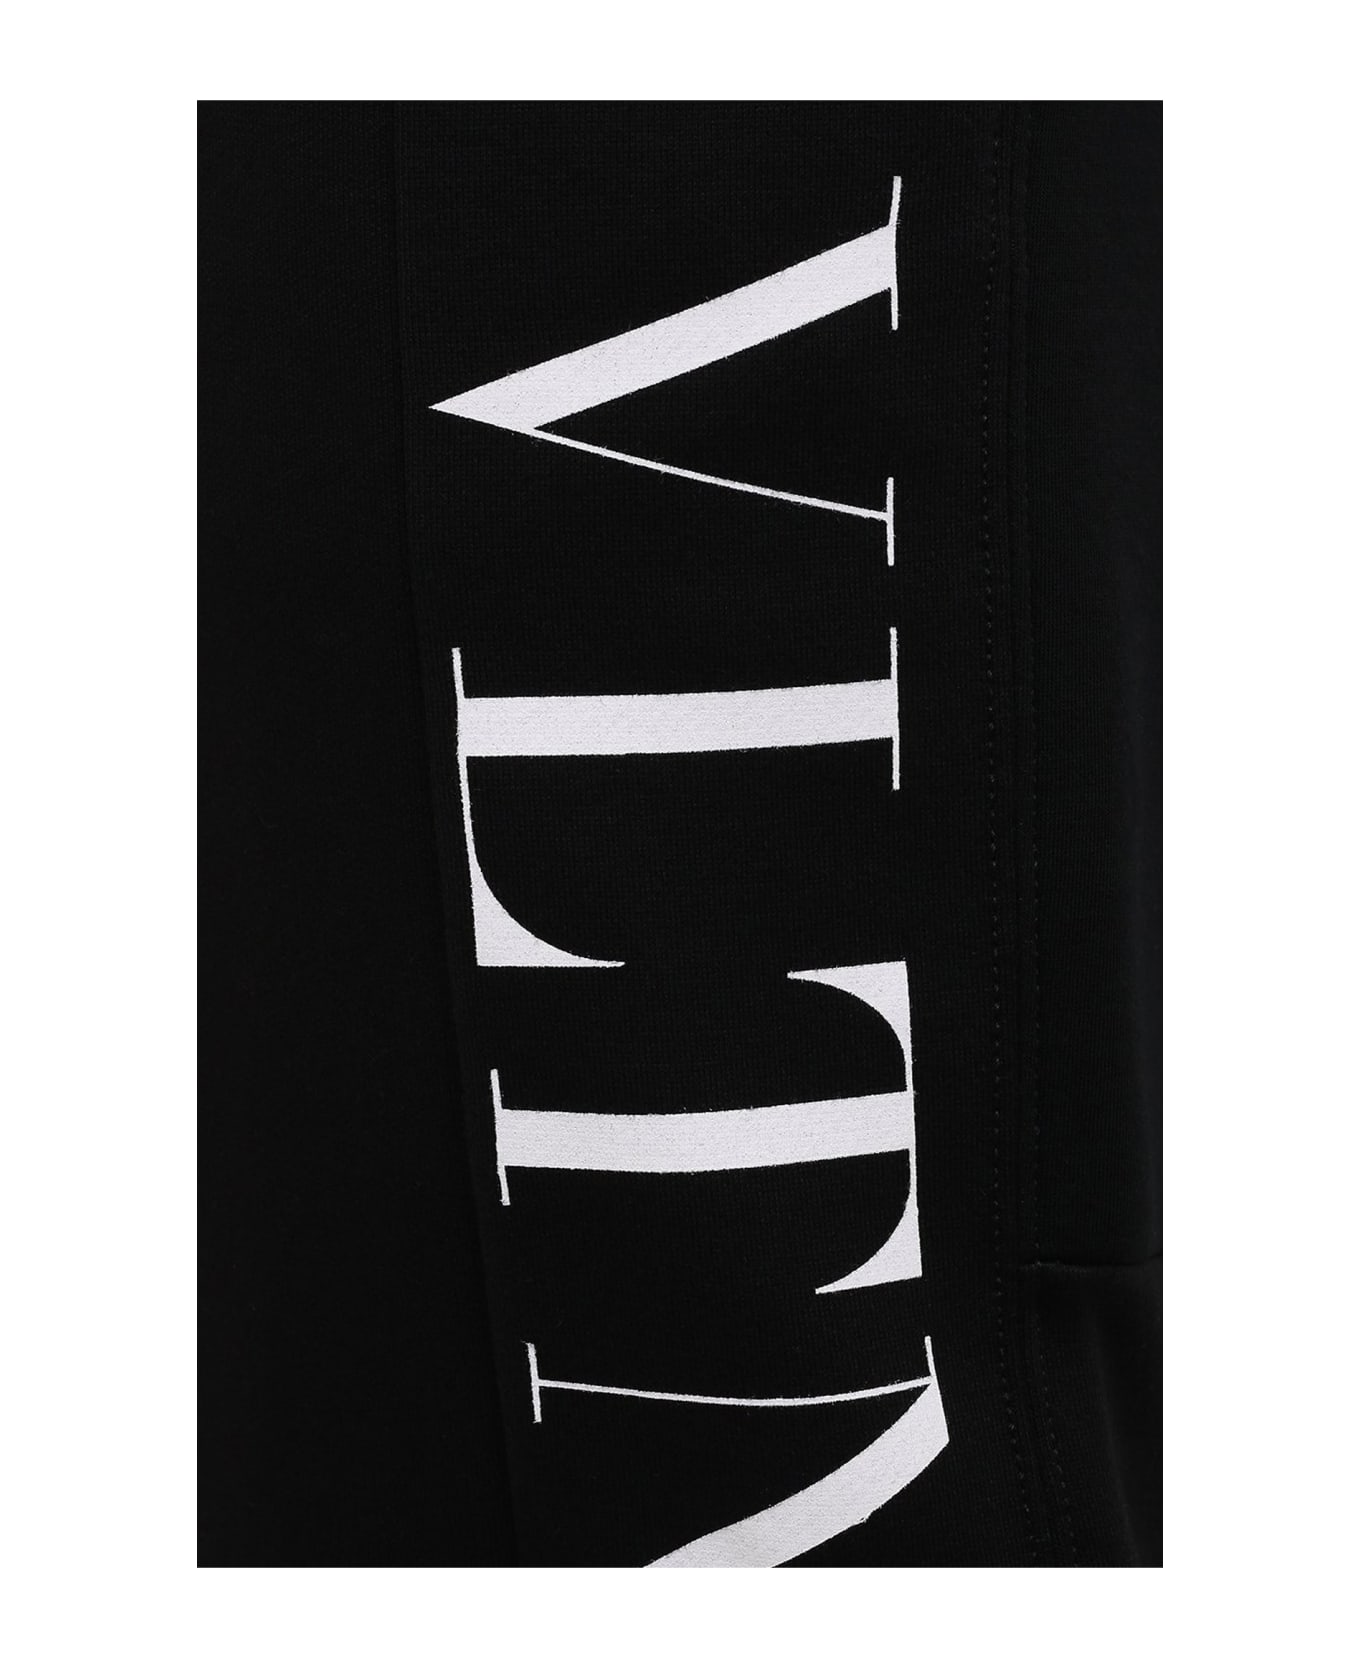 Valentino Cotton Logo Pants - Black スウェットパンツ